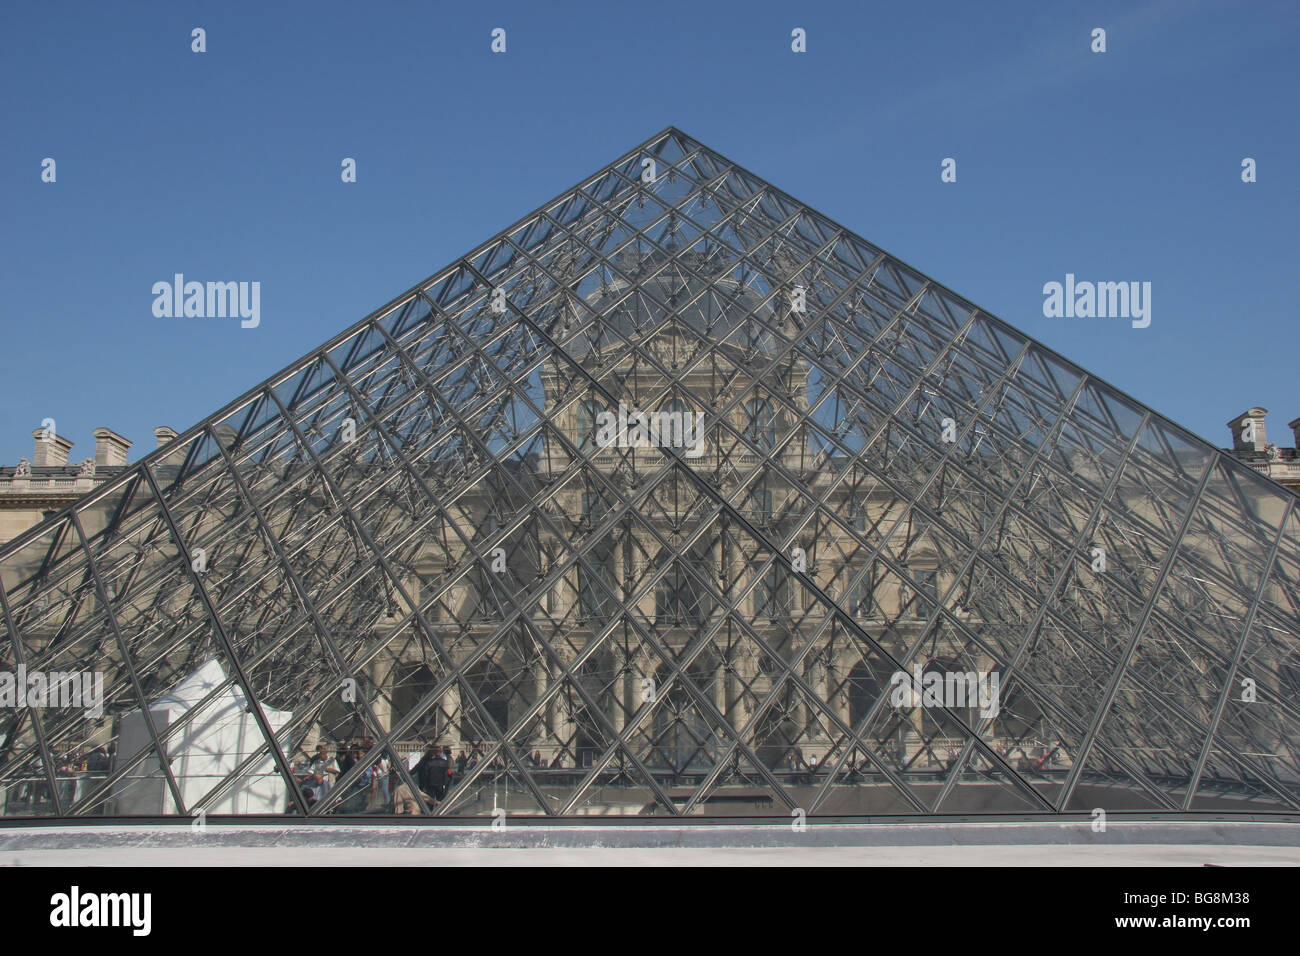 Il museo del Louvre. La grande piramide in vetro. Le piramidi è stato progettato dall'architetto Leone Ming Pei, nel 1981. Parigi. La Francia. L'Europa. Foto Stock